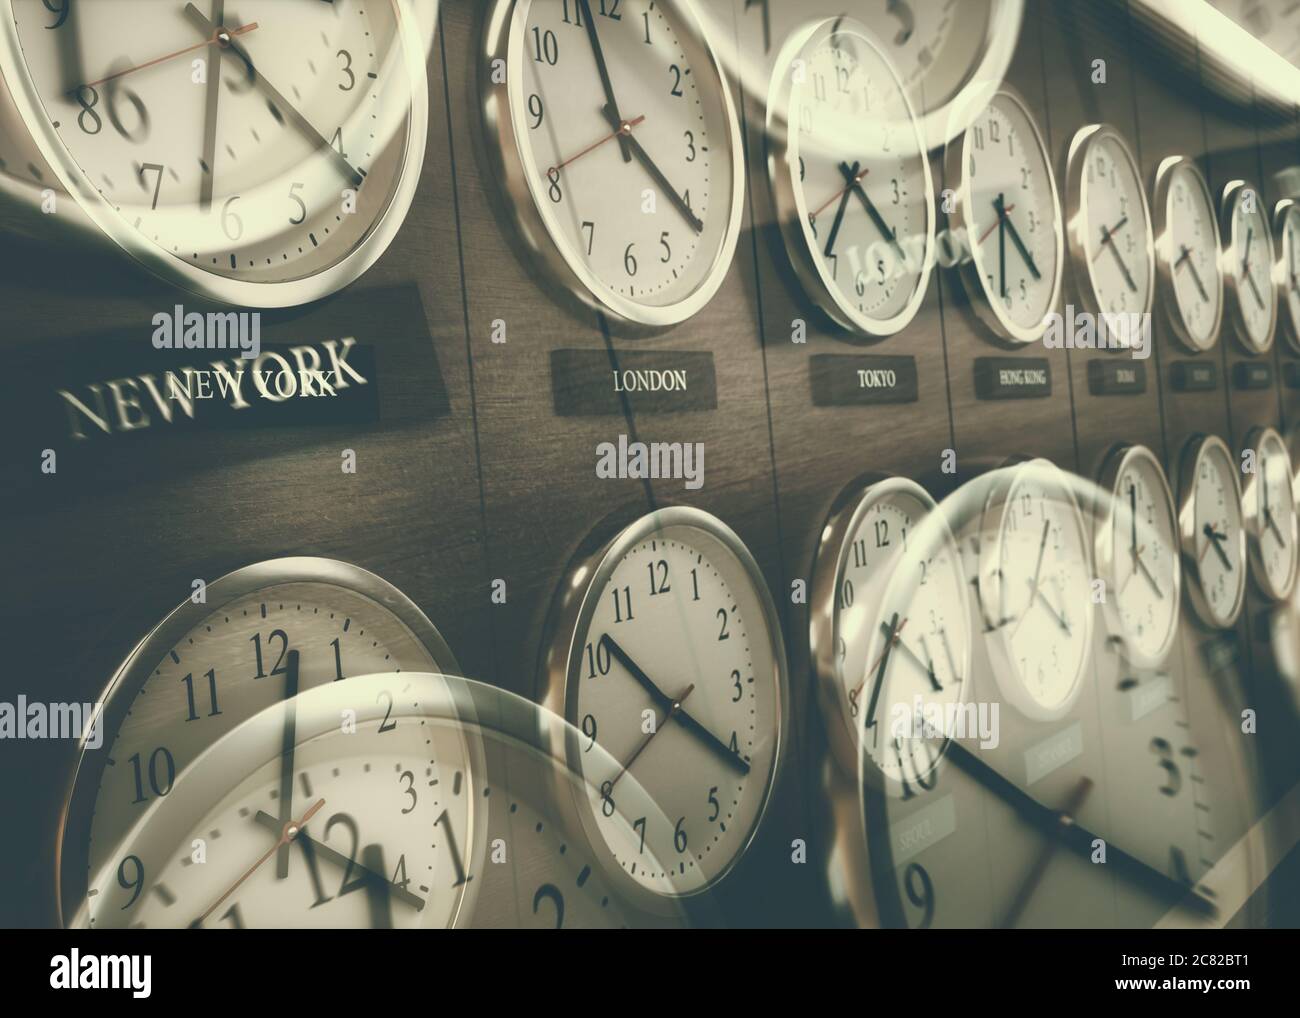 Reloj de zona horaria mundial. Relojes en la pared, mostrando la hora en todo el mundo. Foto de stock